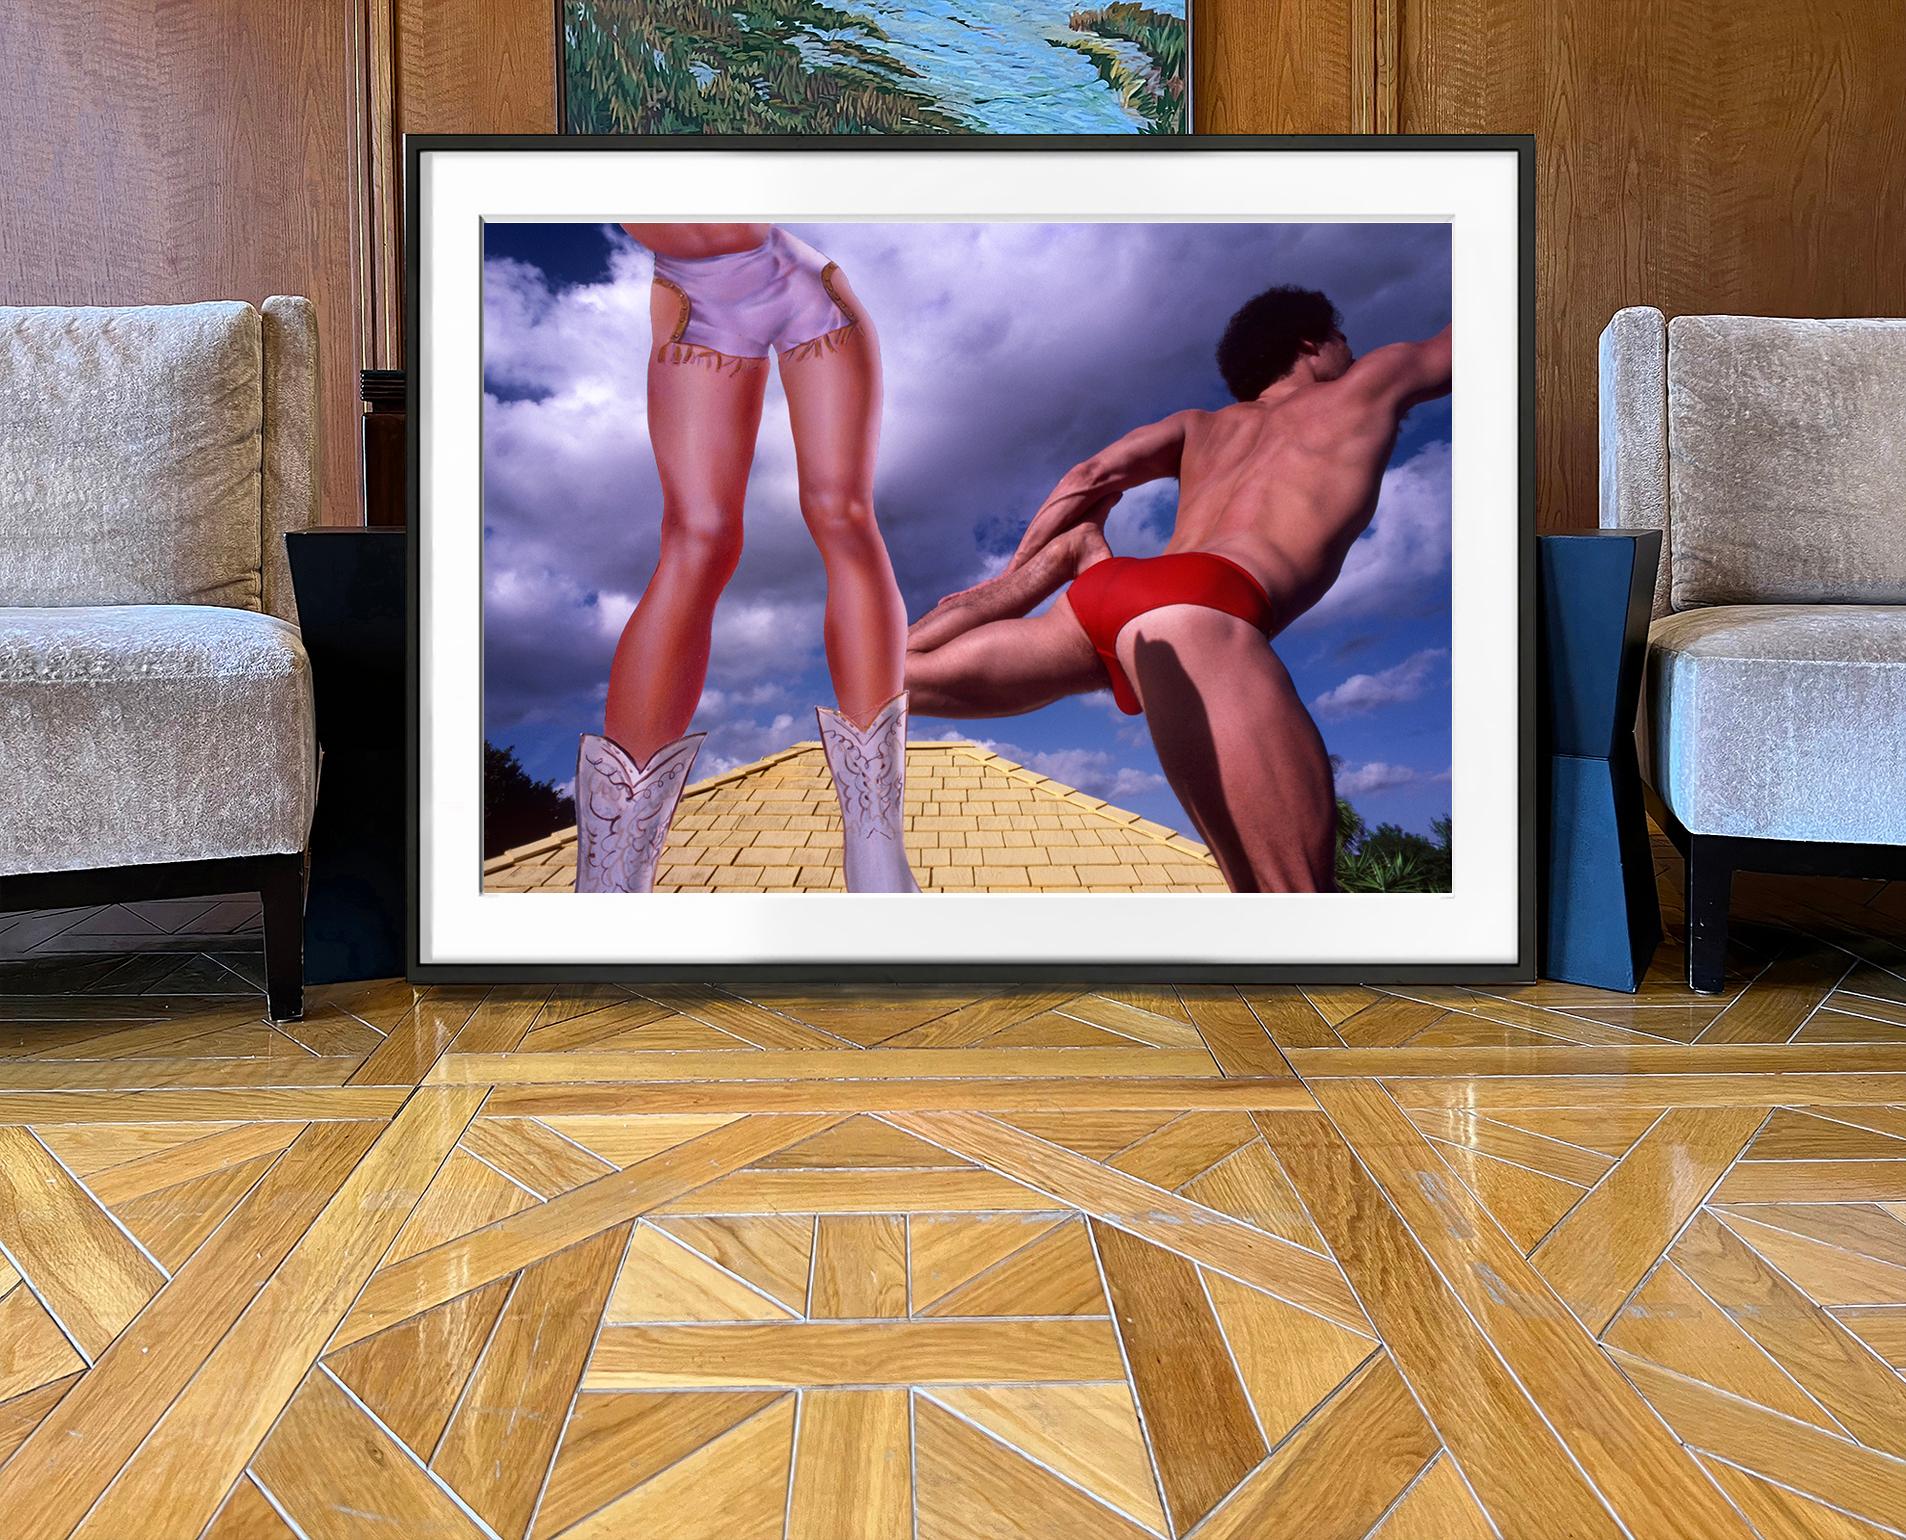 Muskulare männliche und  Leggy-Frauenfigur auf dem Dachboden (Surrealismus), Photograph, von Robert Funk